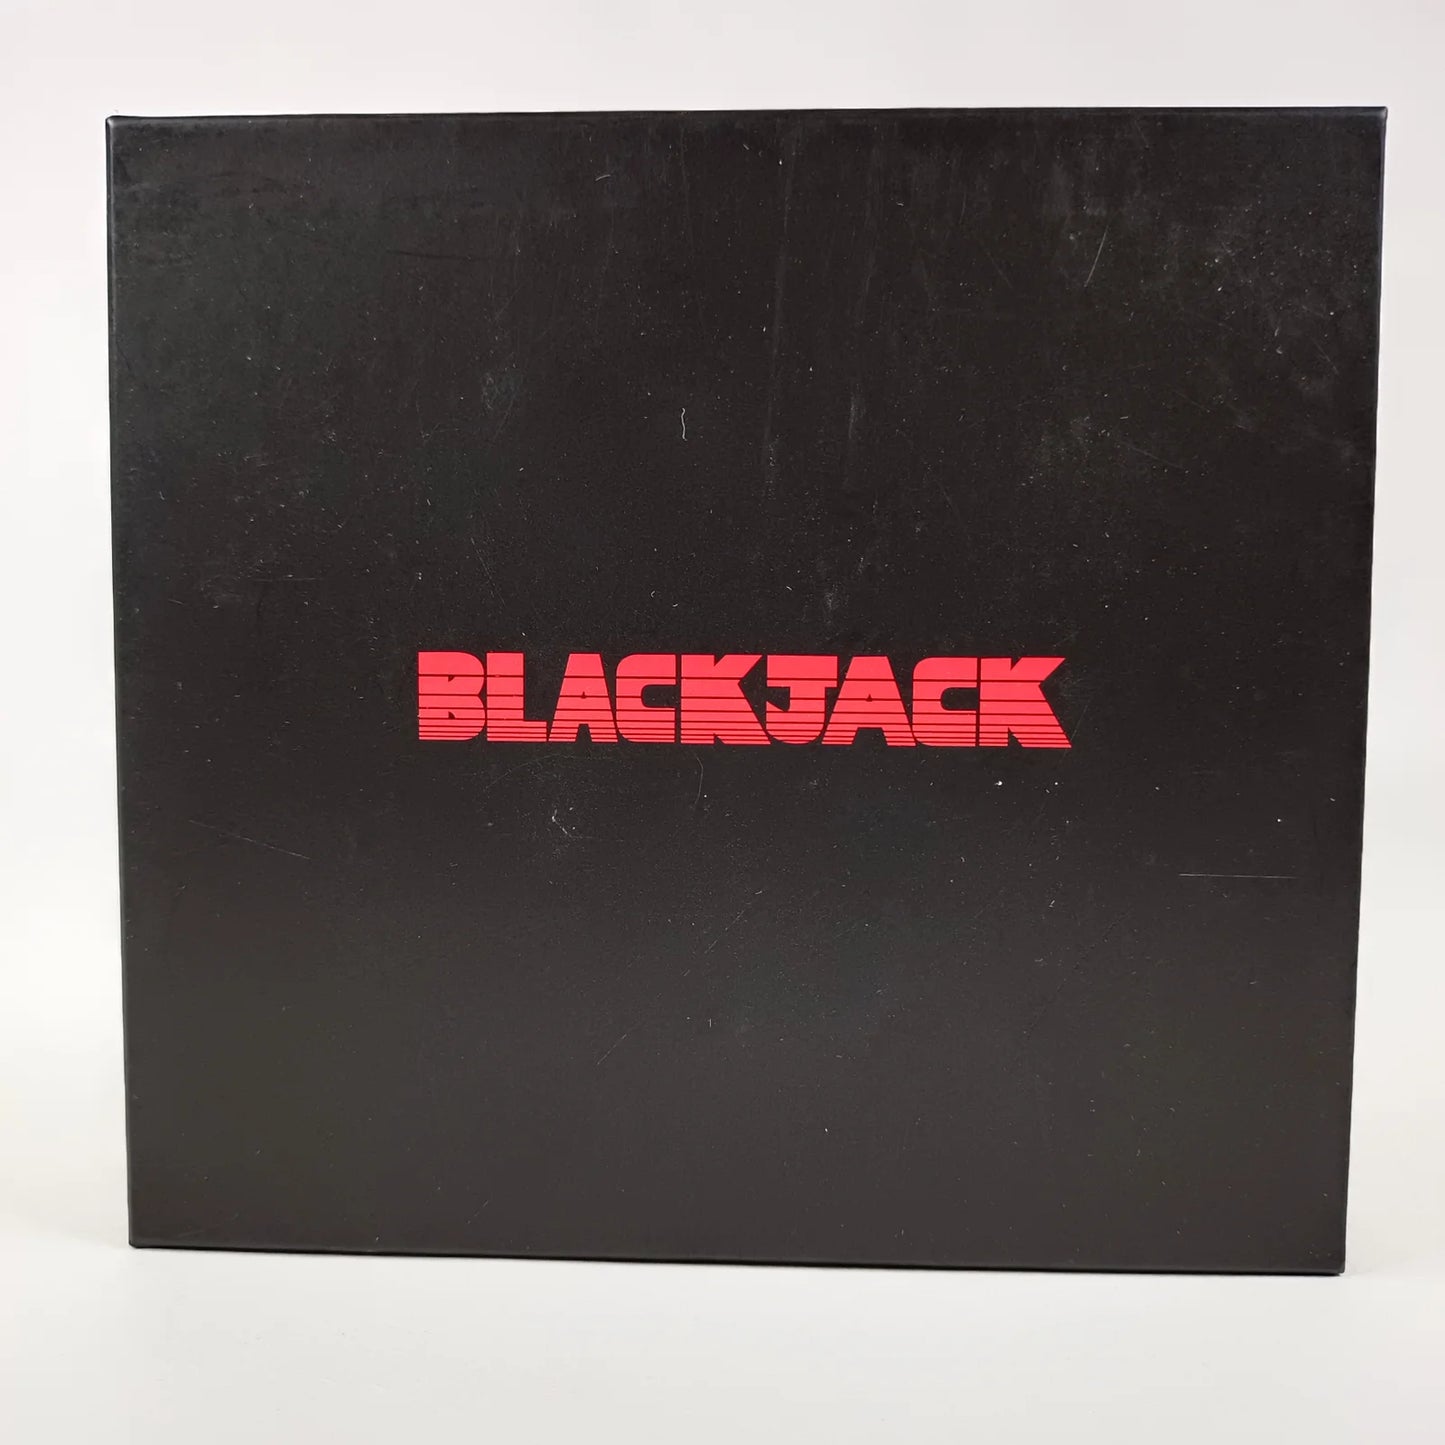 Black Jack Best Album